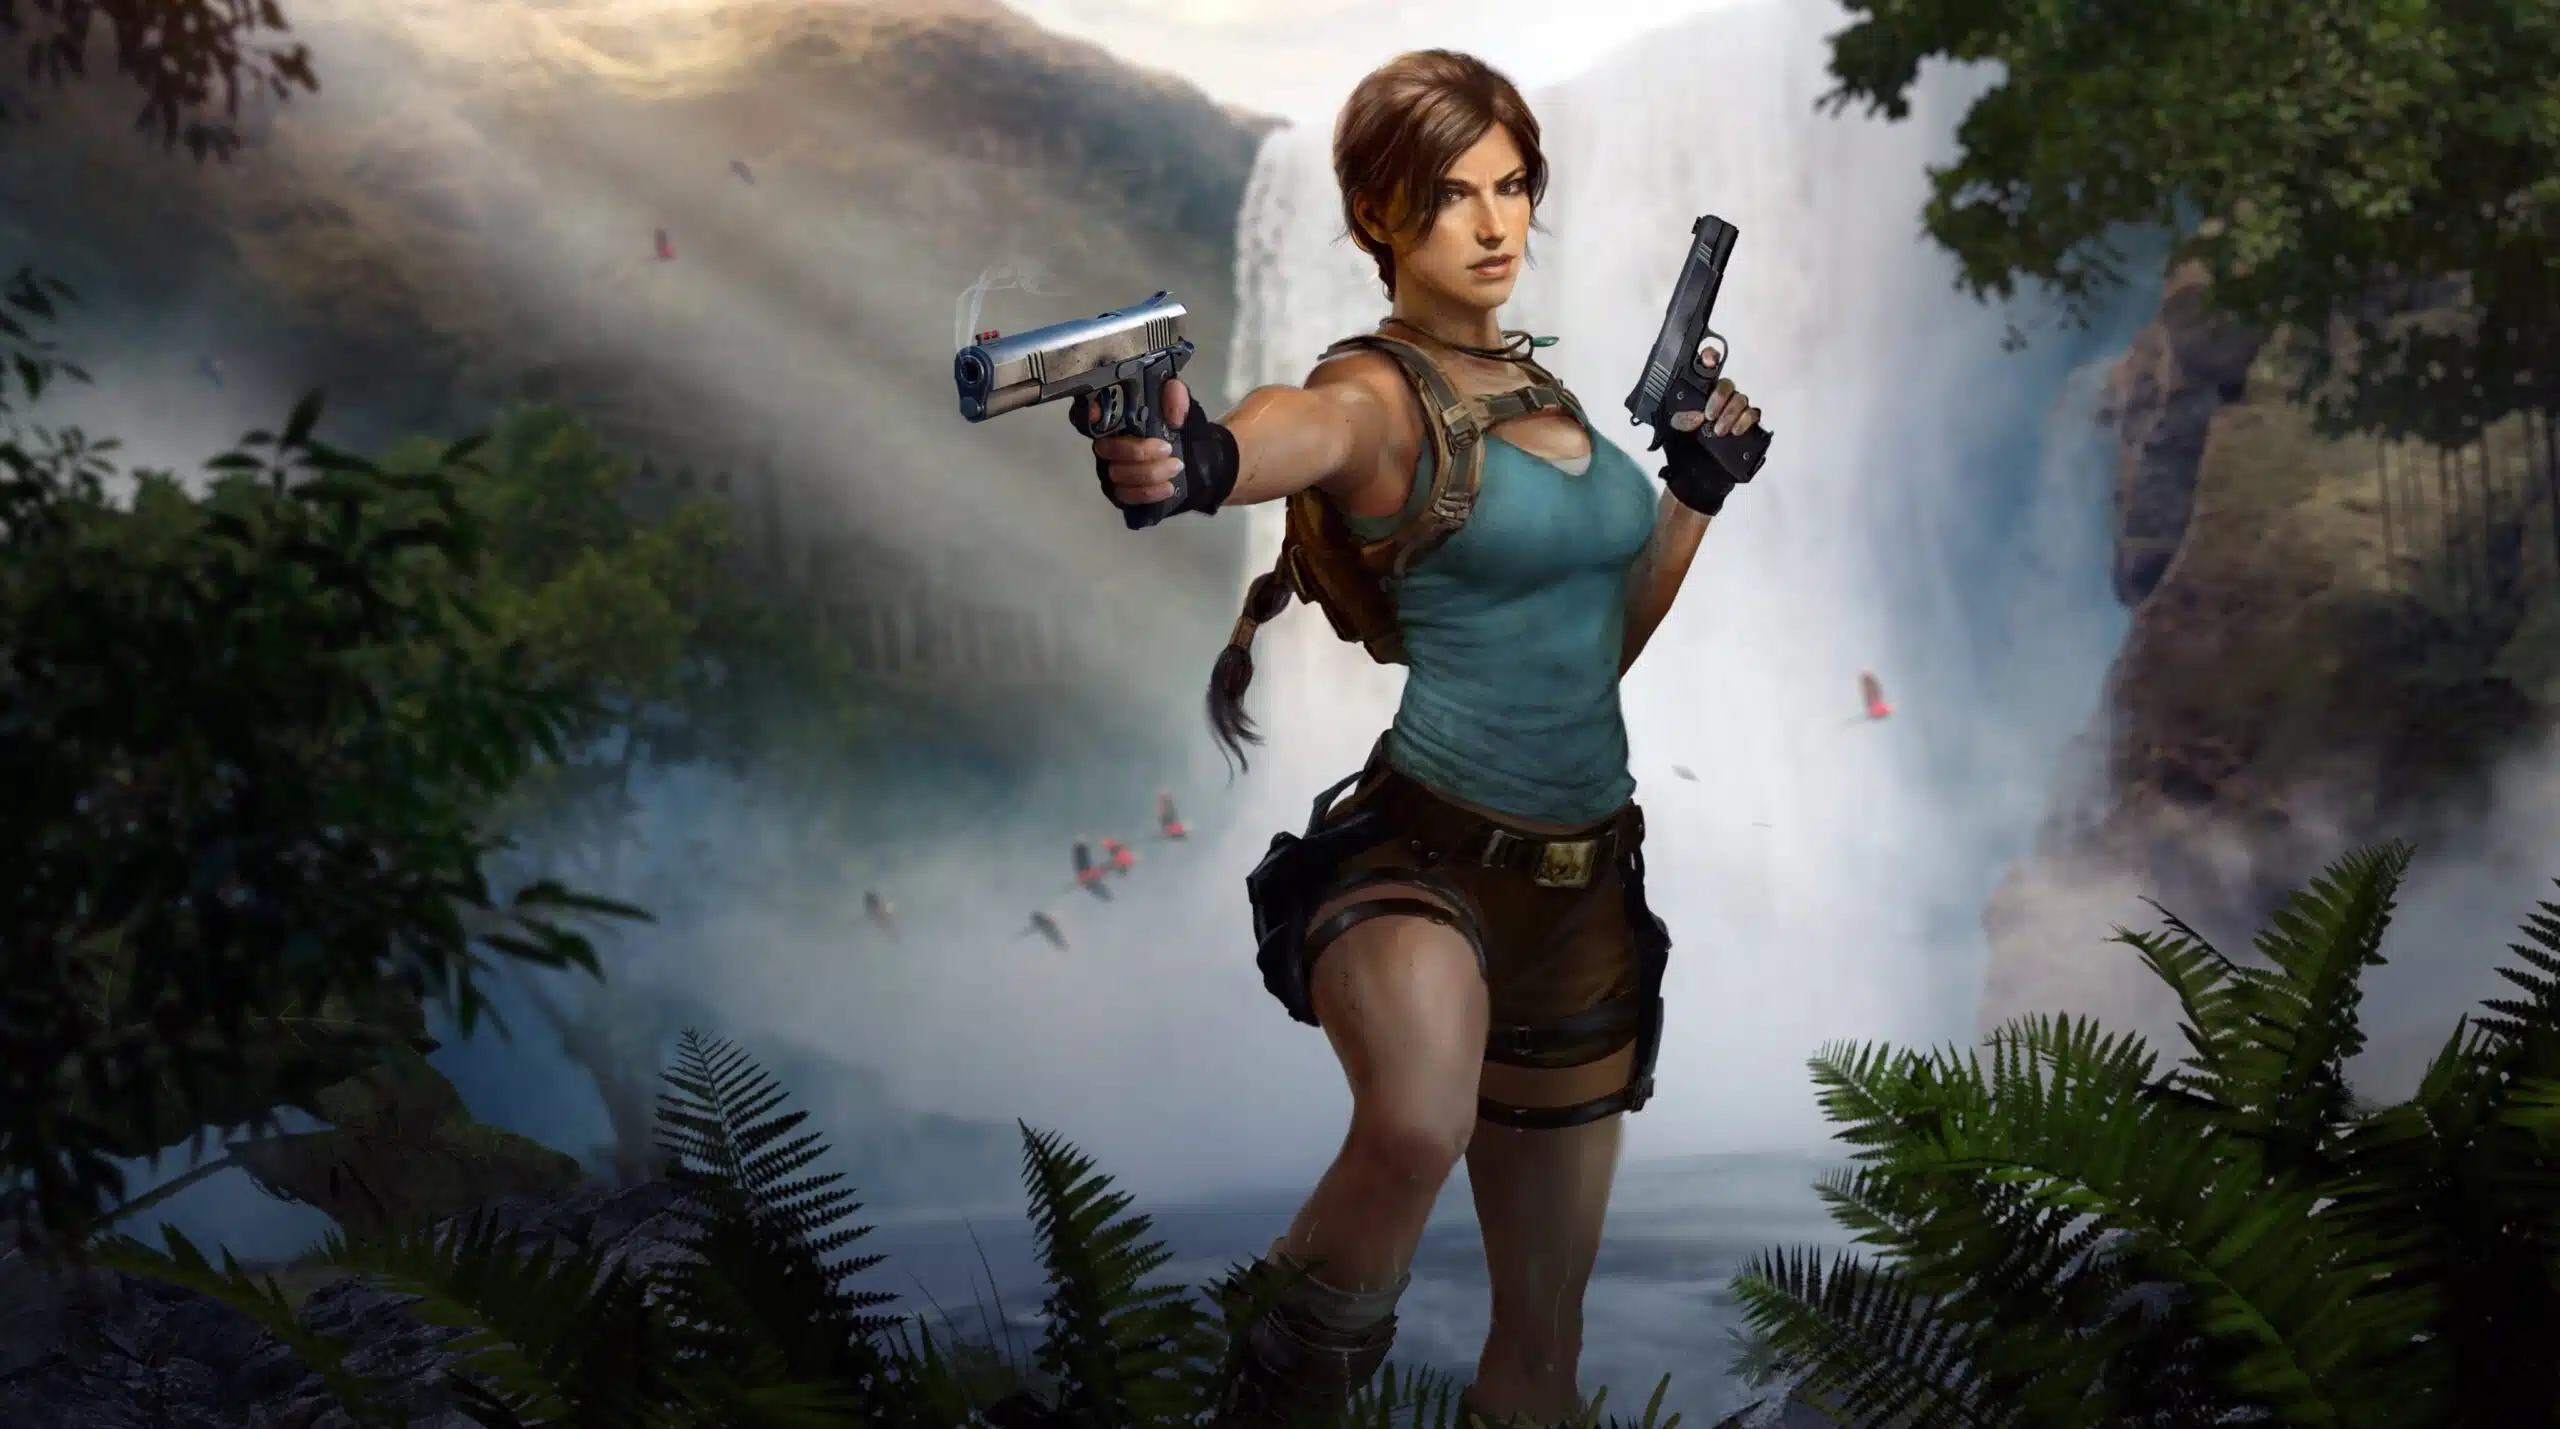 Nova Lara Croft de Tomb Raider em uma paisagem de floresta usando camisa azul e suas tradicionais pistolas